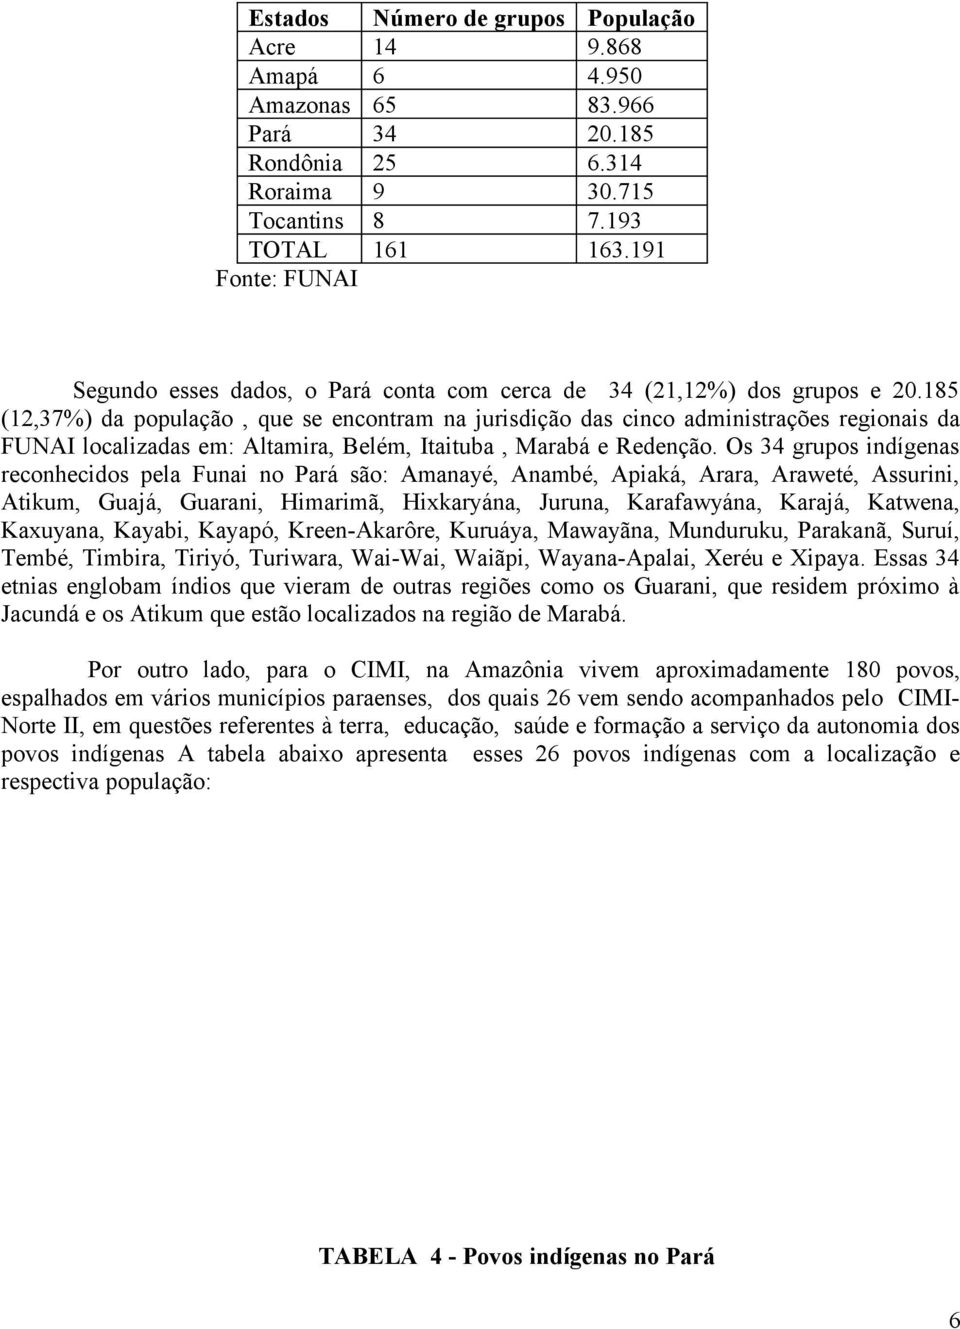 185 (12,37%) da população, que se encontram na jurisdição das cinco administrações regionais da FUNAI localizadas em: Altamira, Belém, Itaituba, Marabá e Redenção.